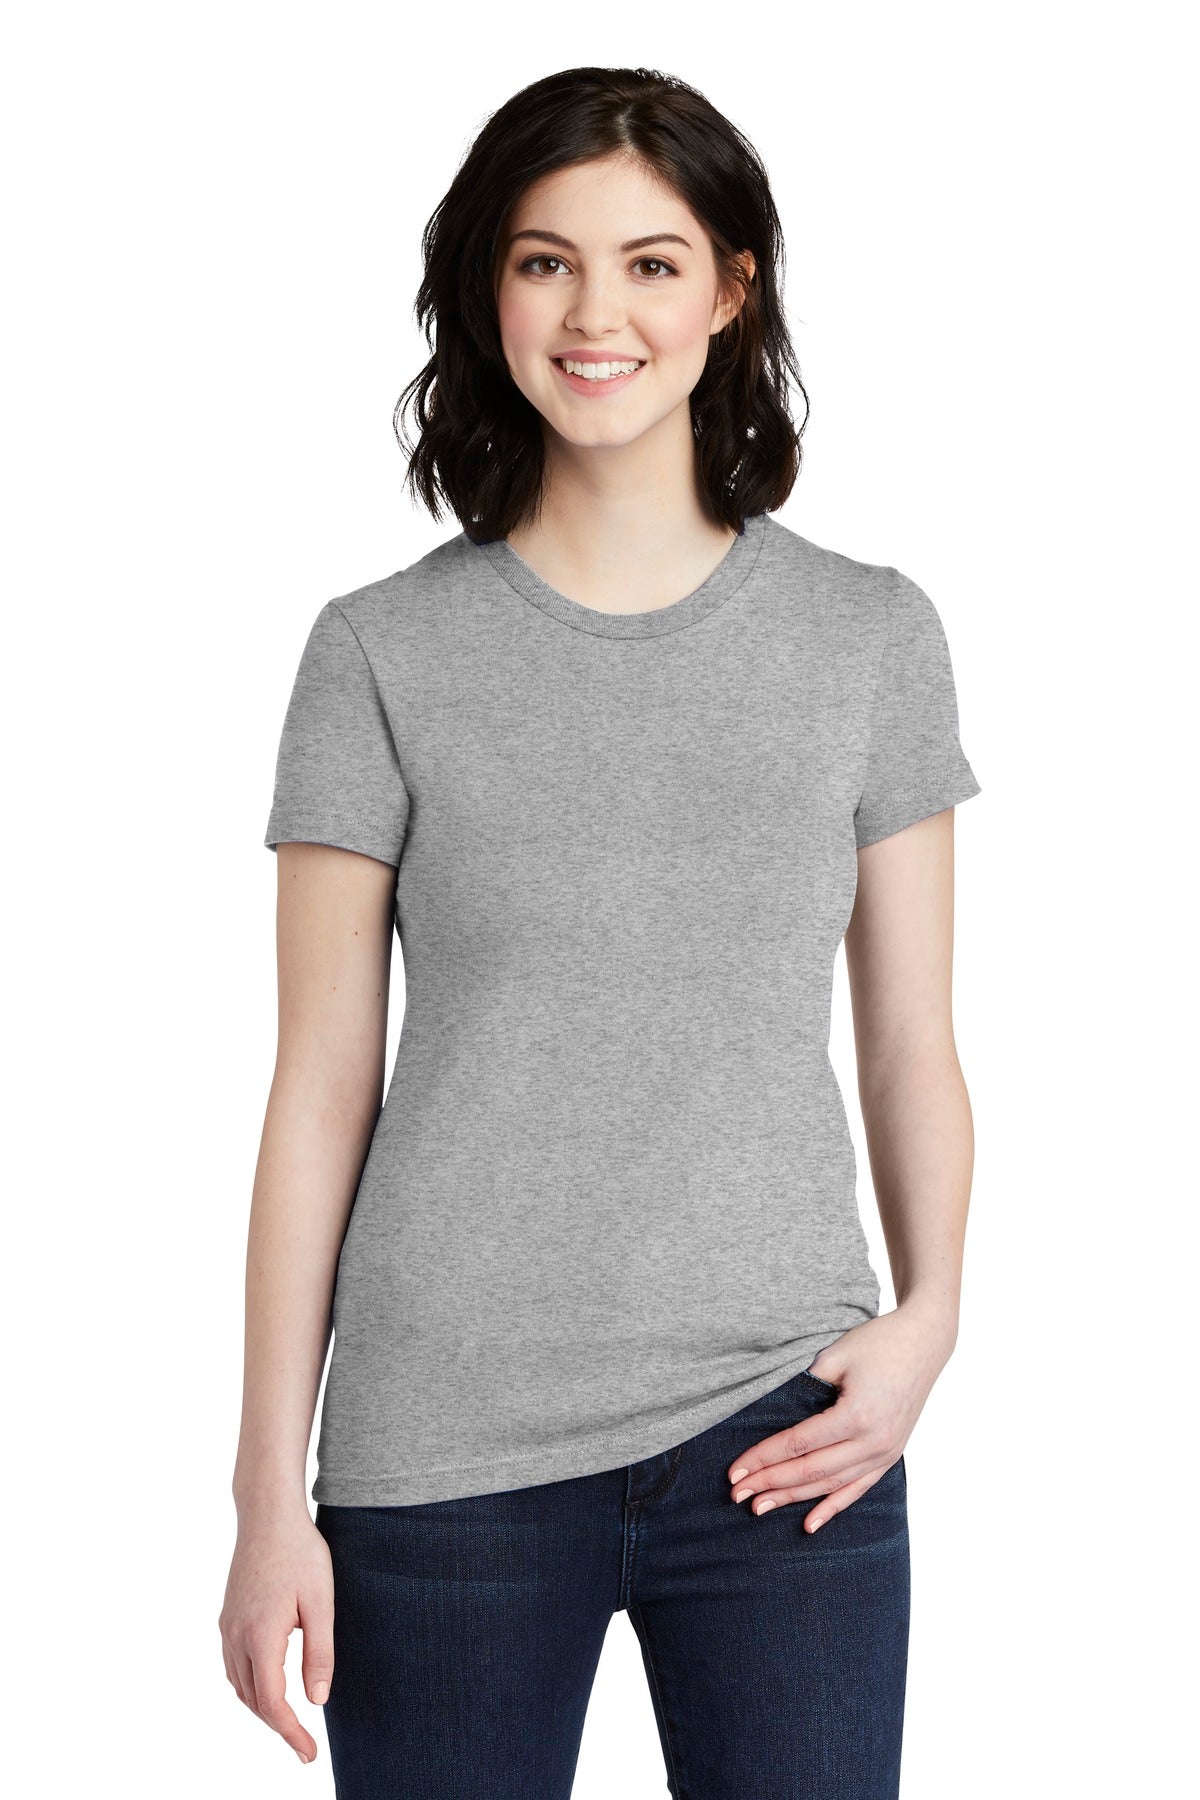 American Apparel ® Women's Fine Jersey T-Shirt. 2102W